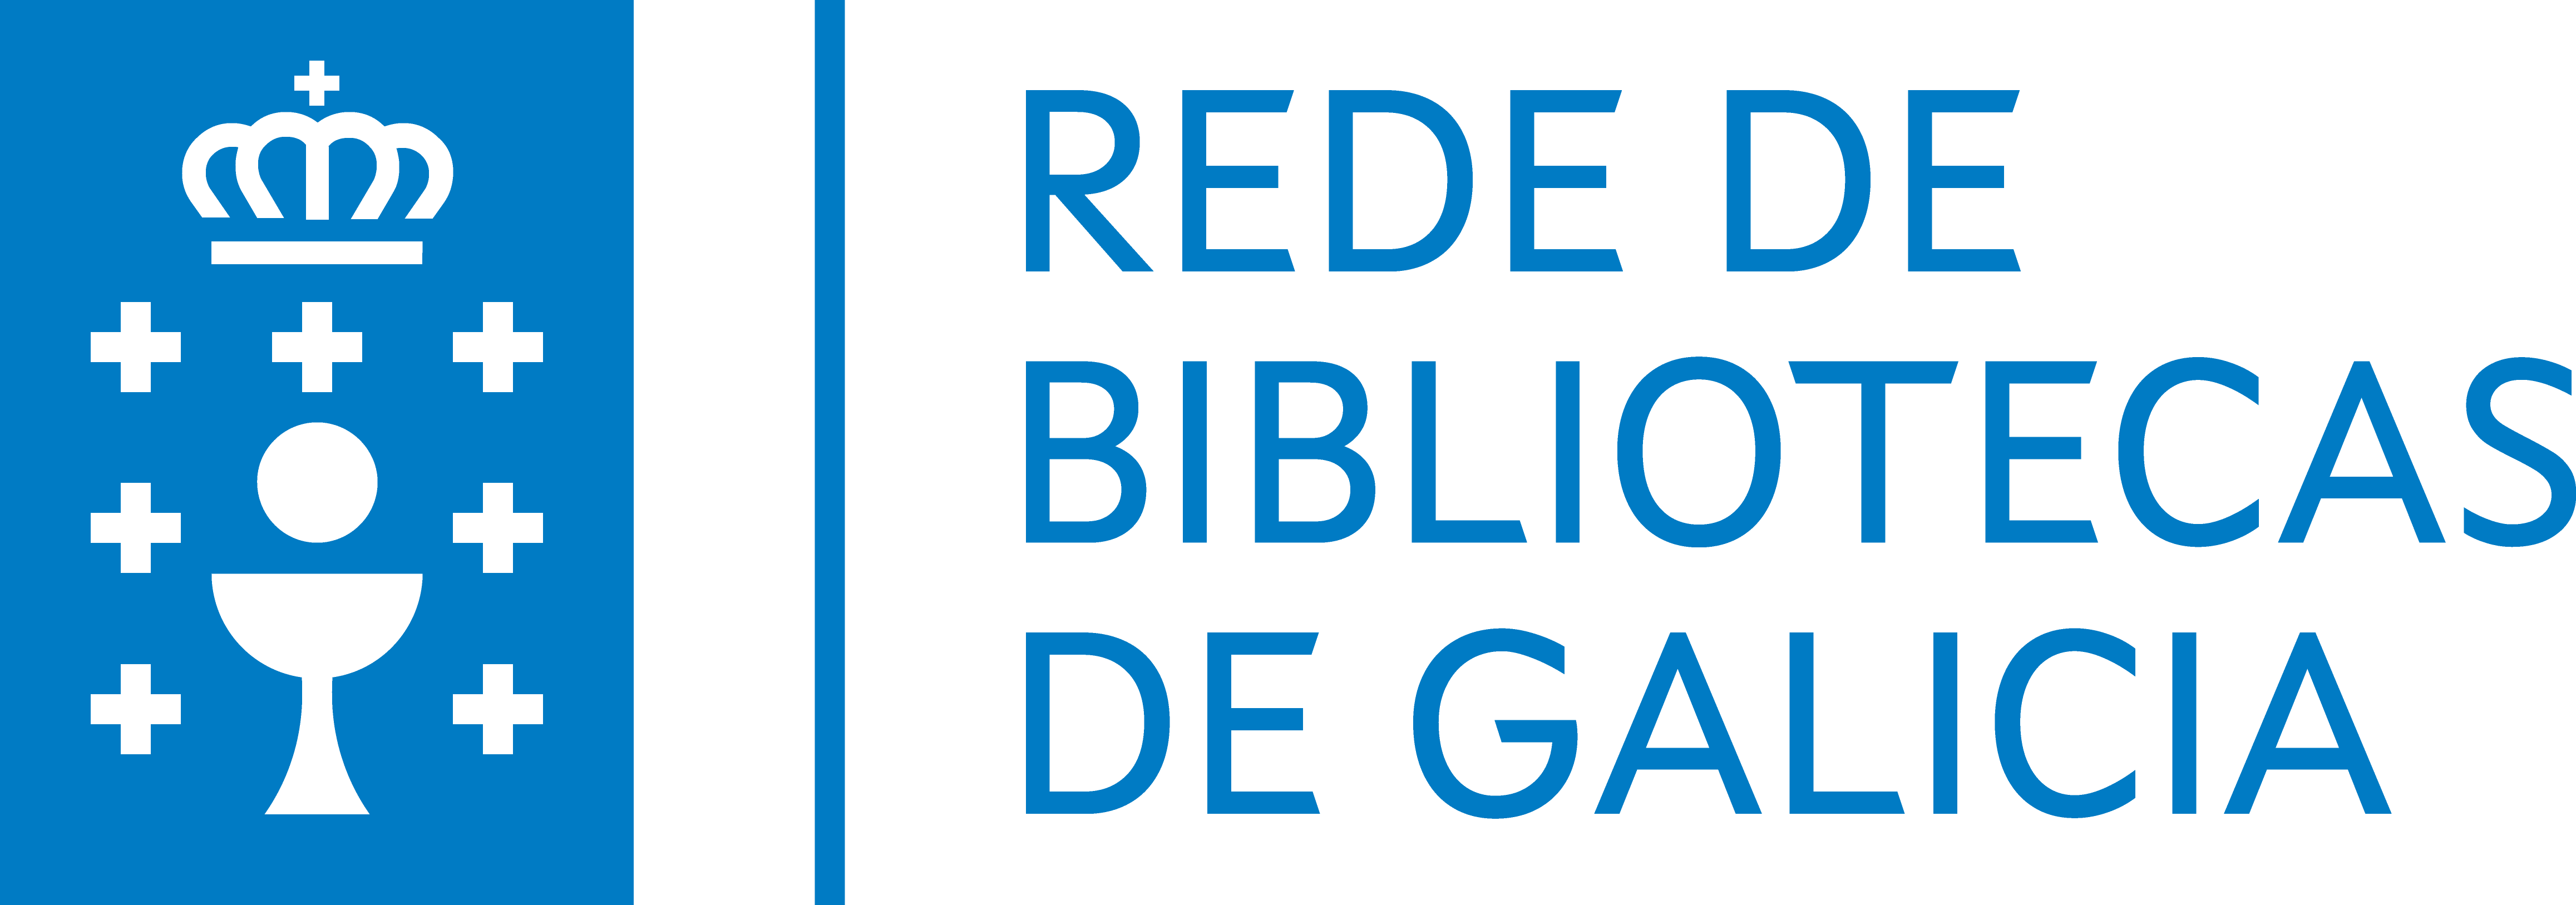 Rede de Bibliotecas de Galicia